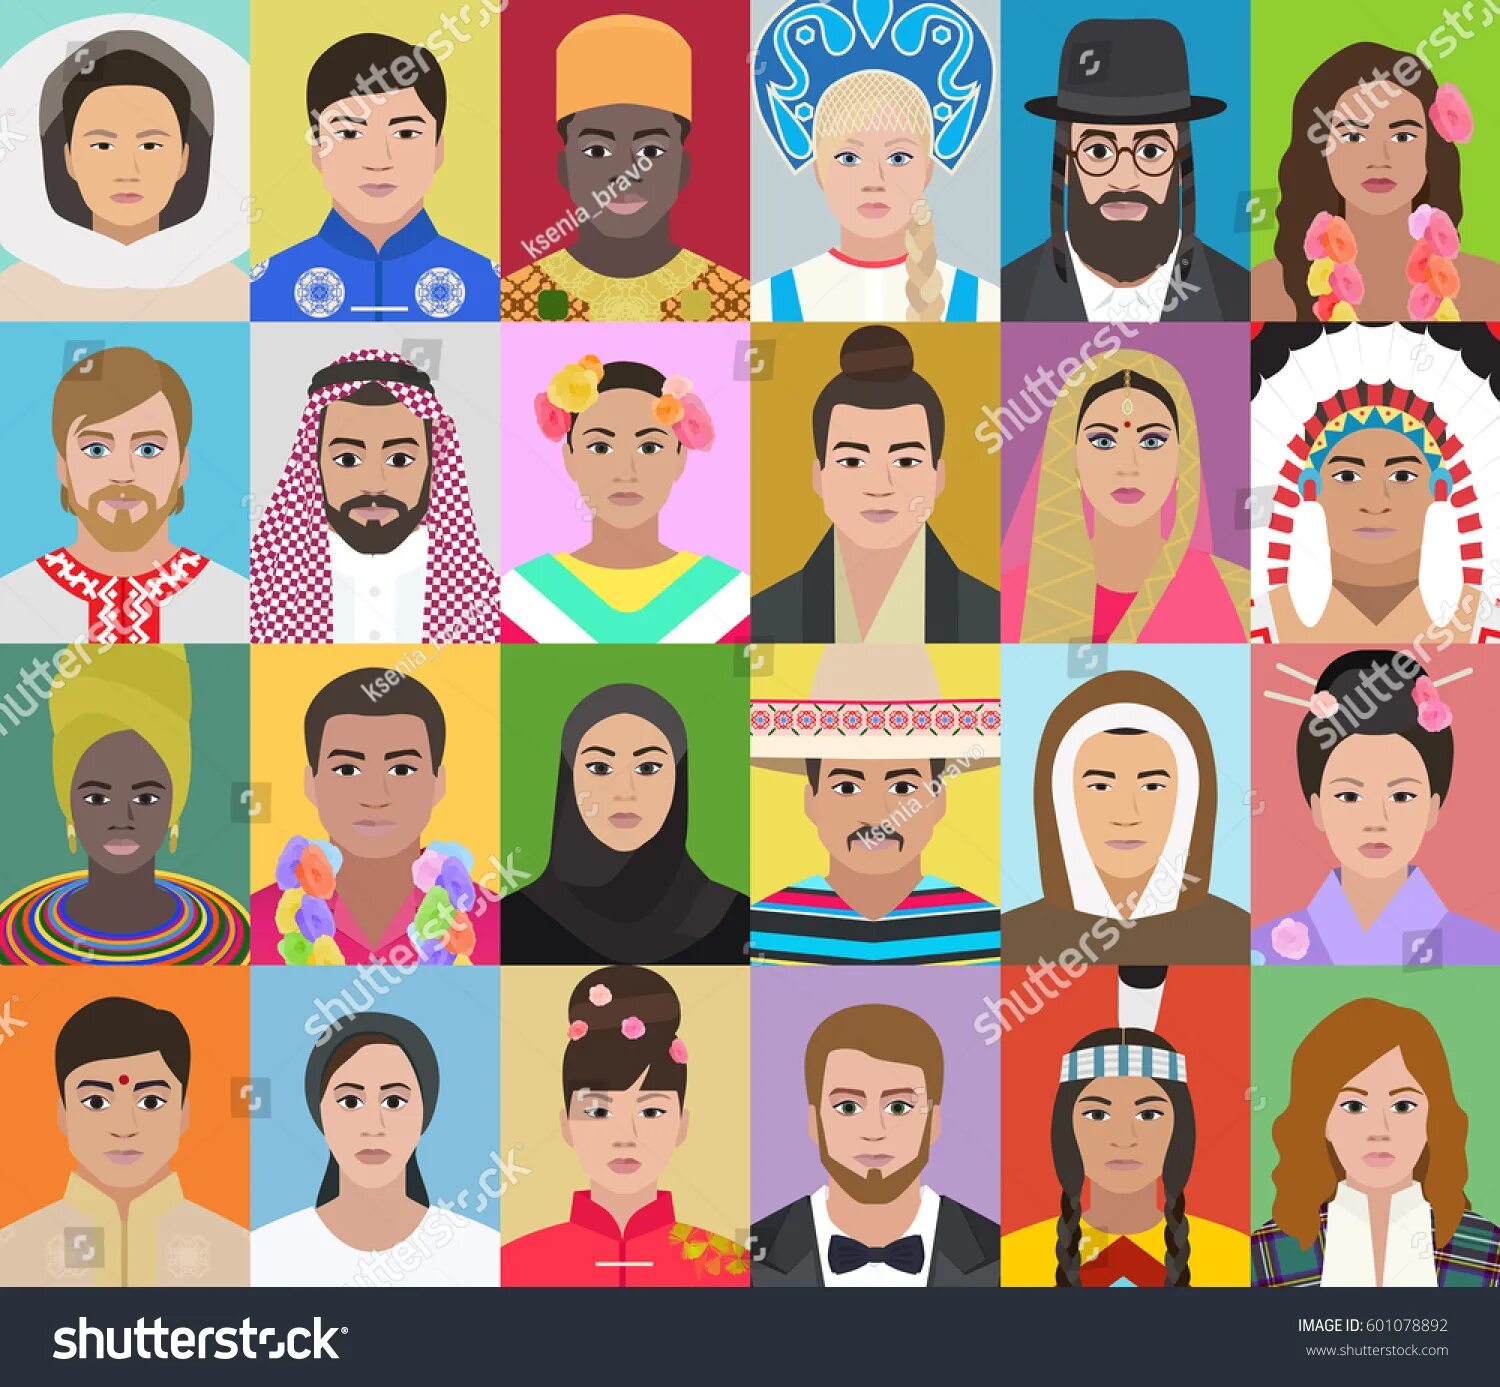 People from different countries. Изображение людей разных национальностей. Портреты людей разных национальностей. Национальности рисунок. Люди разных национальностей рисунки.